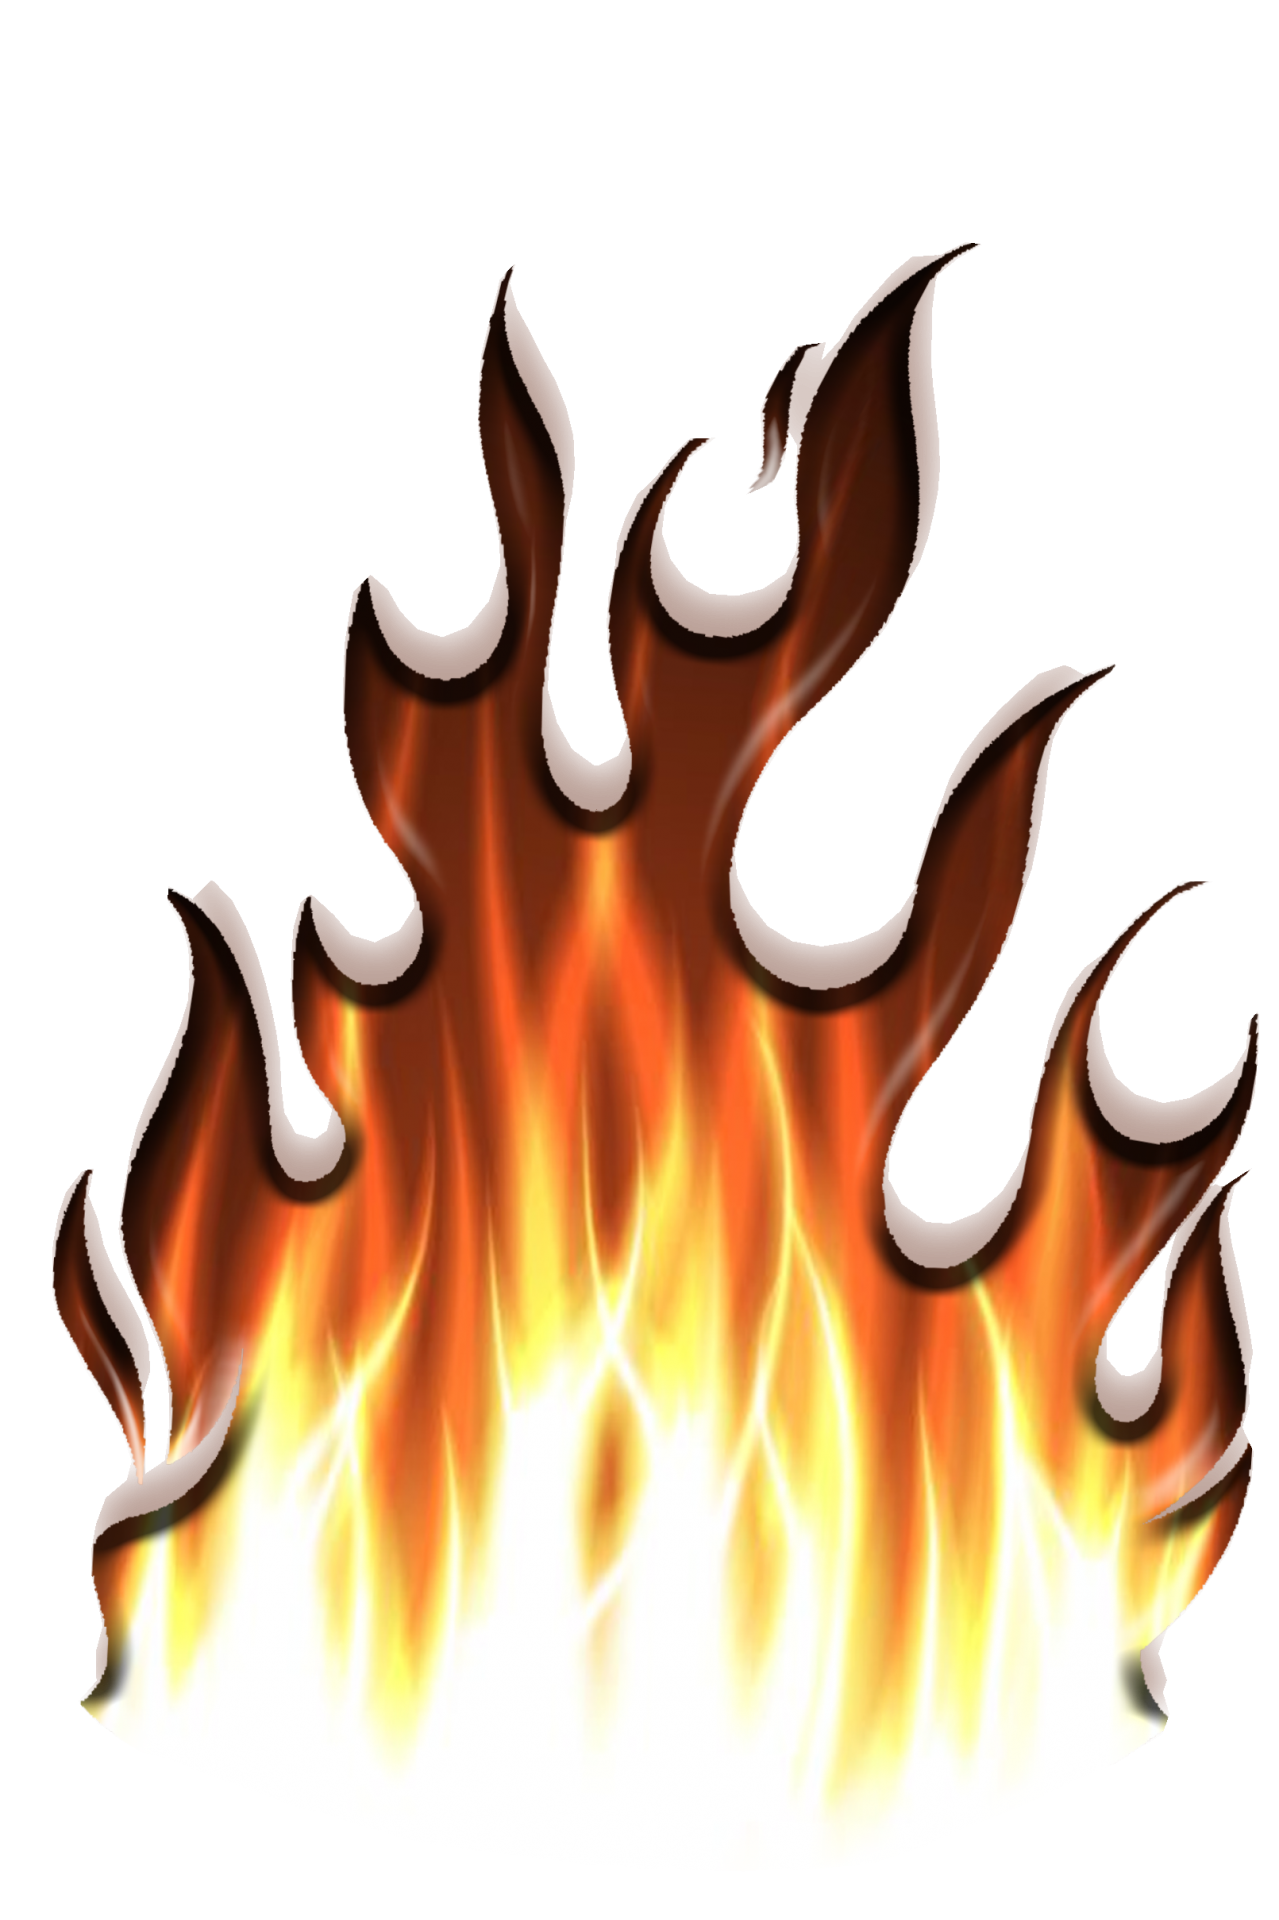 Grafika ognia Darmowe zdjęcie - Public Domain Pictures